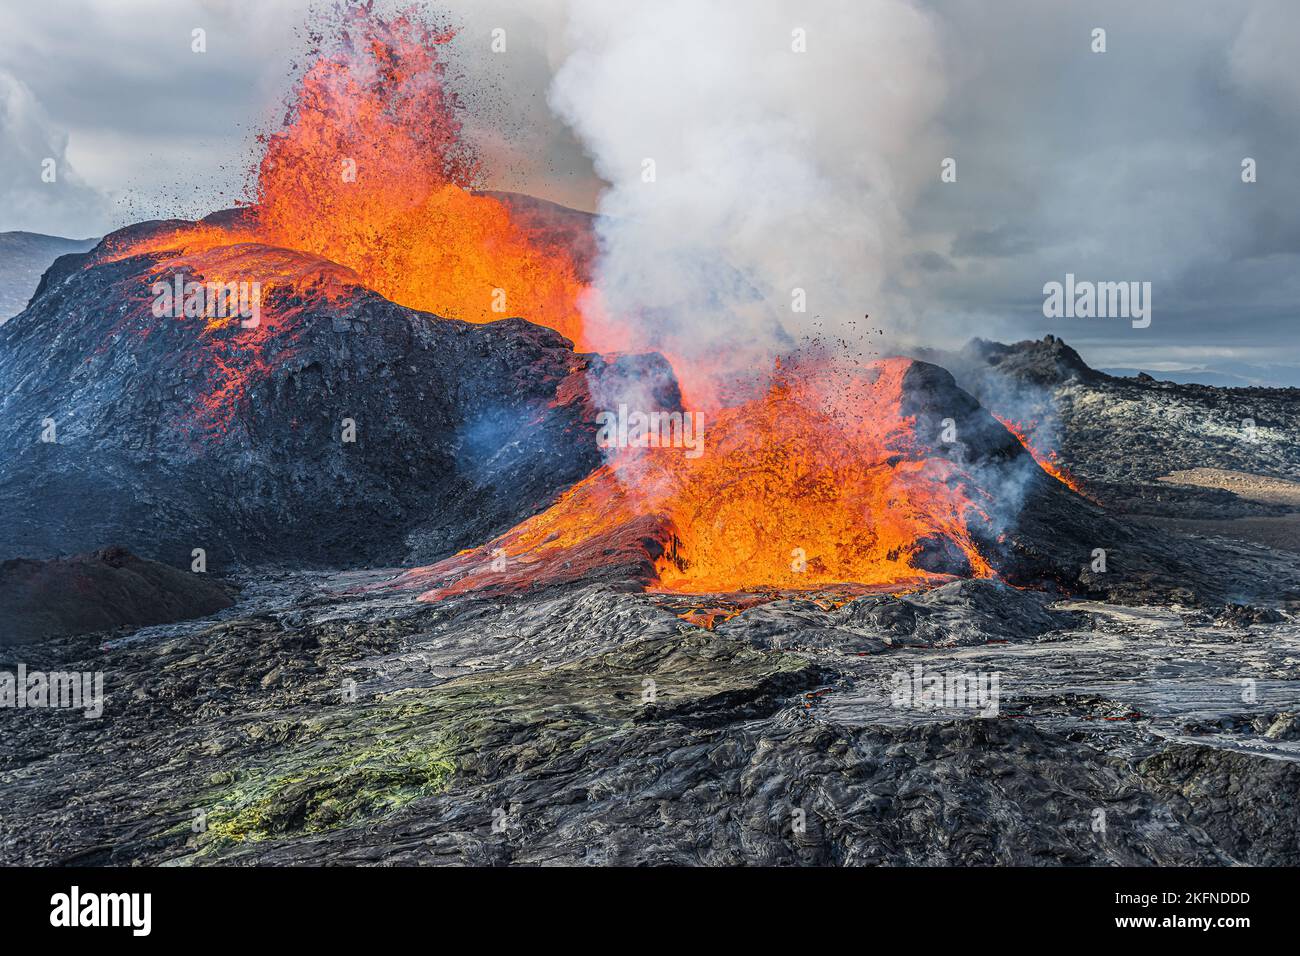 Le volcan craque de la lave chaude. Fontaine de lave d'un volcan actif sur la péninsule de Reykjanes en Islande. Paysage dans Geopark à la journée. Développement de vapeur Banque D'Images